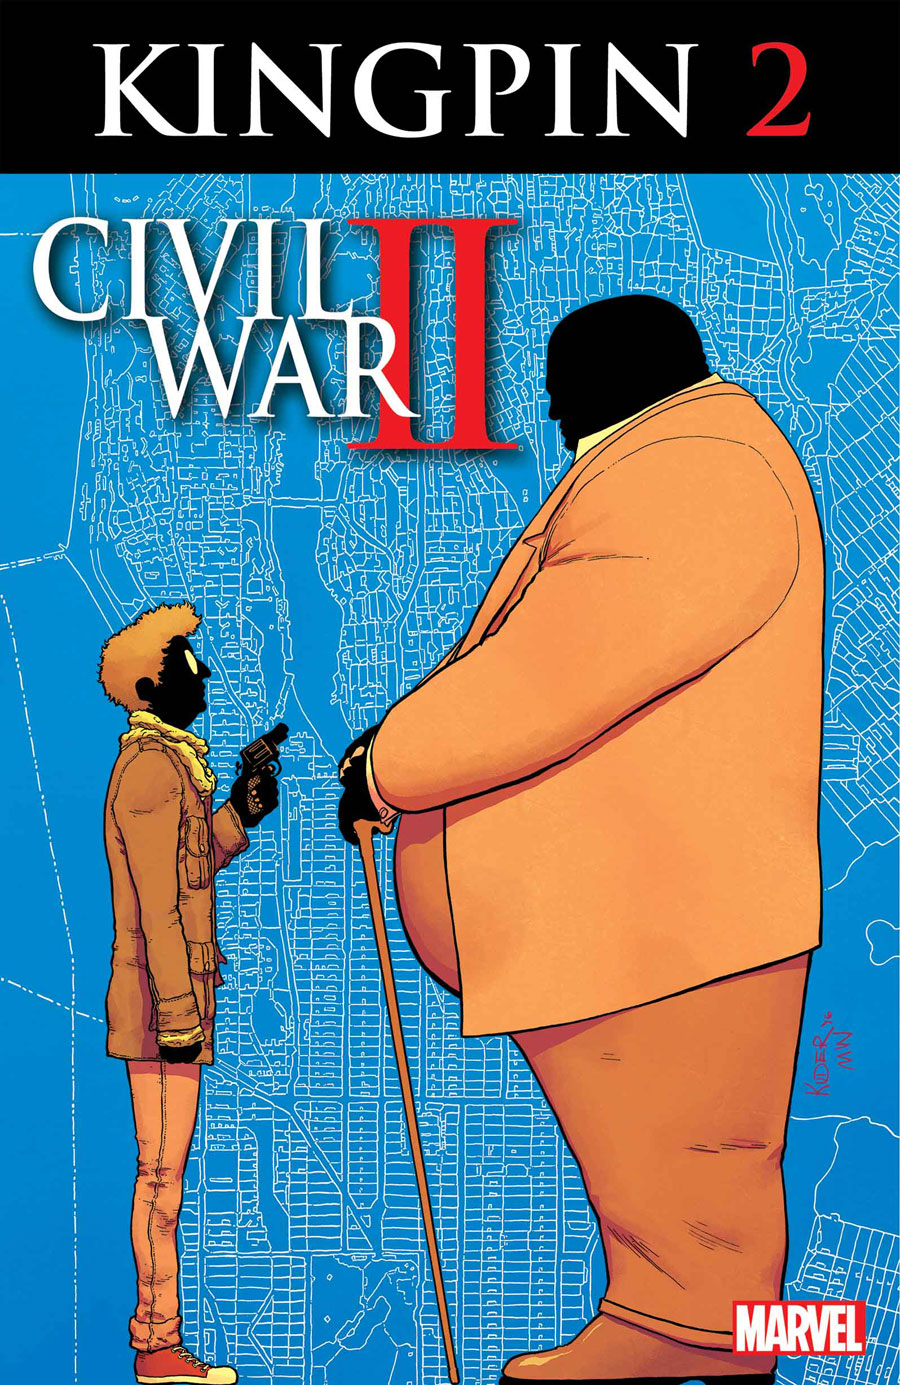 Civil War II: Kingpin